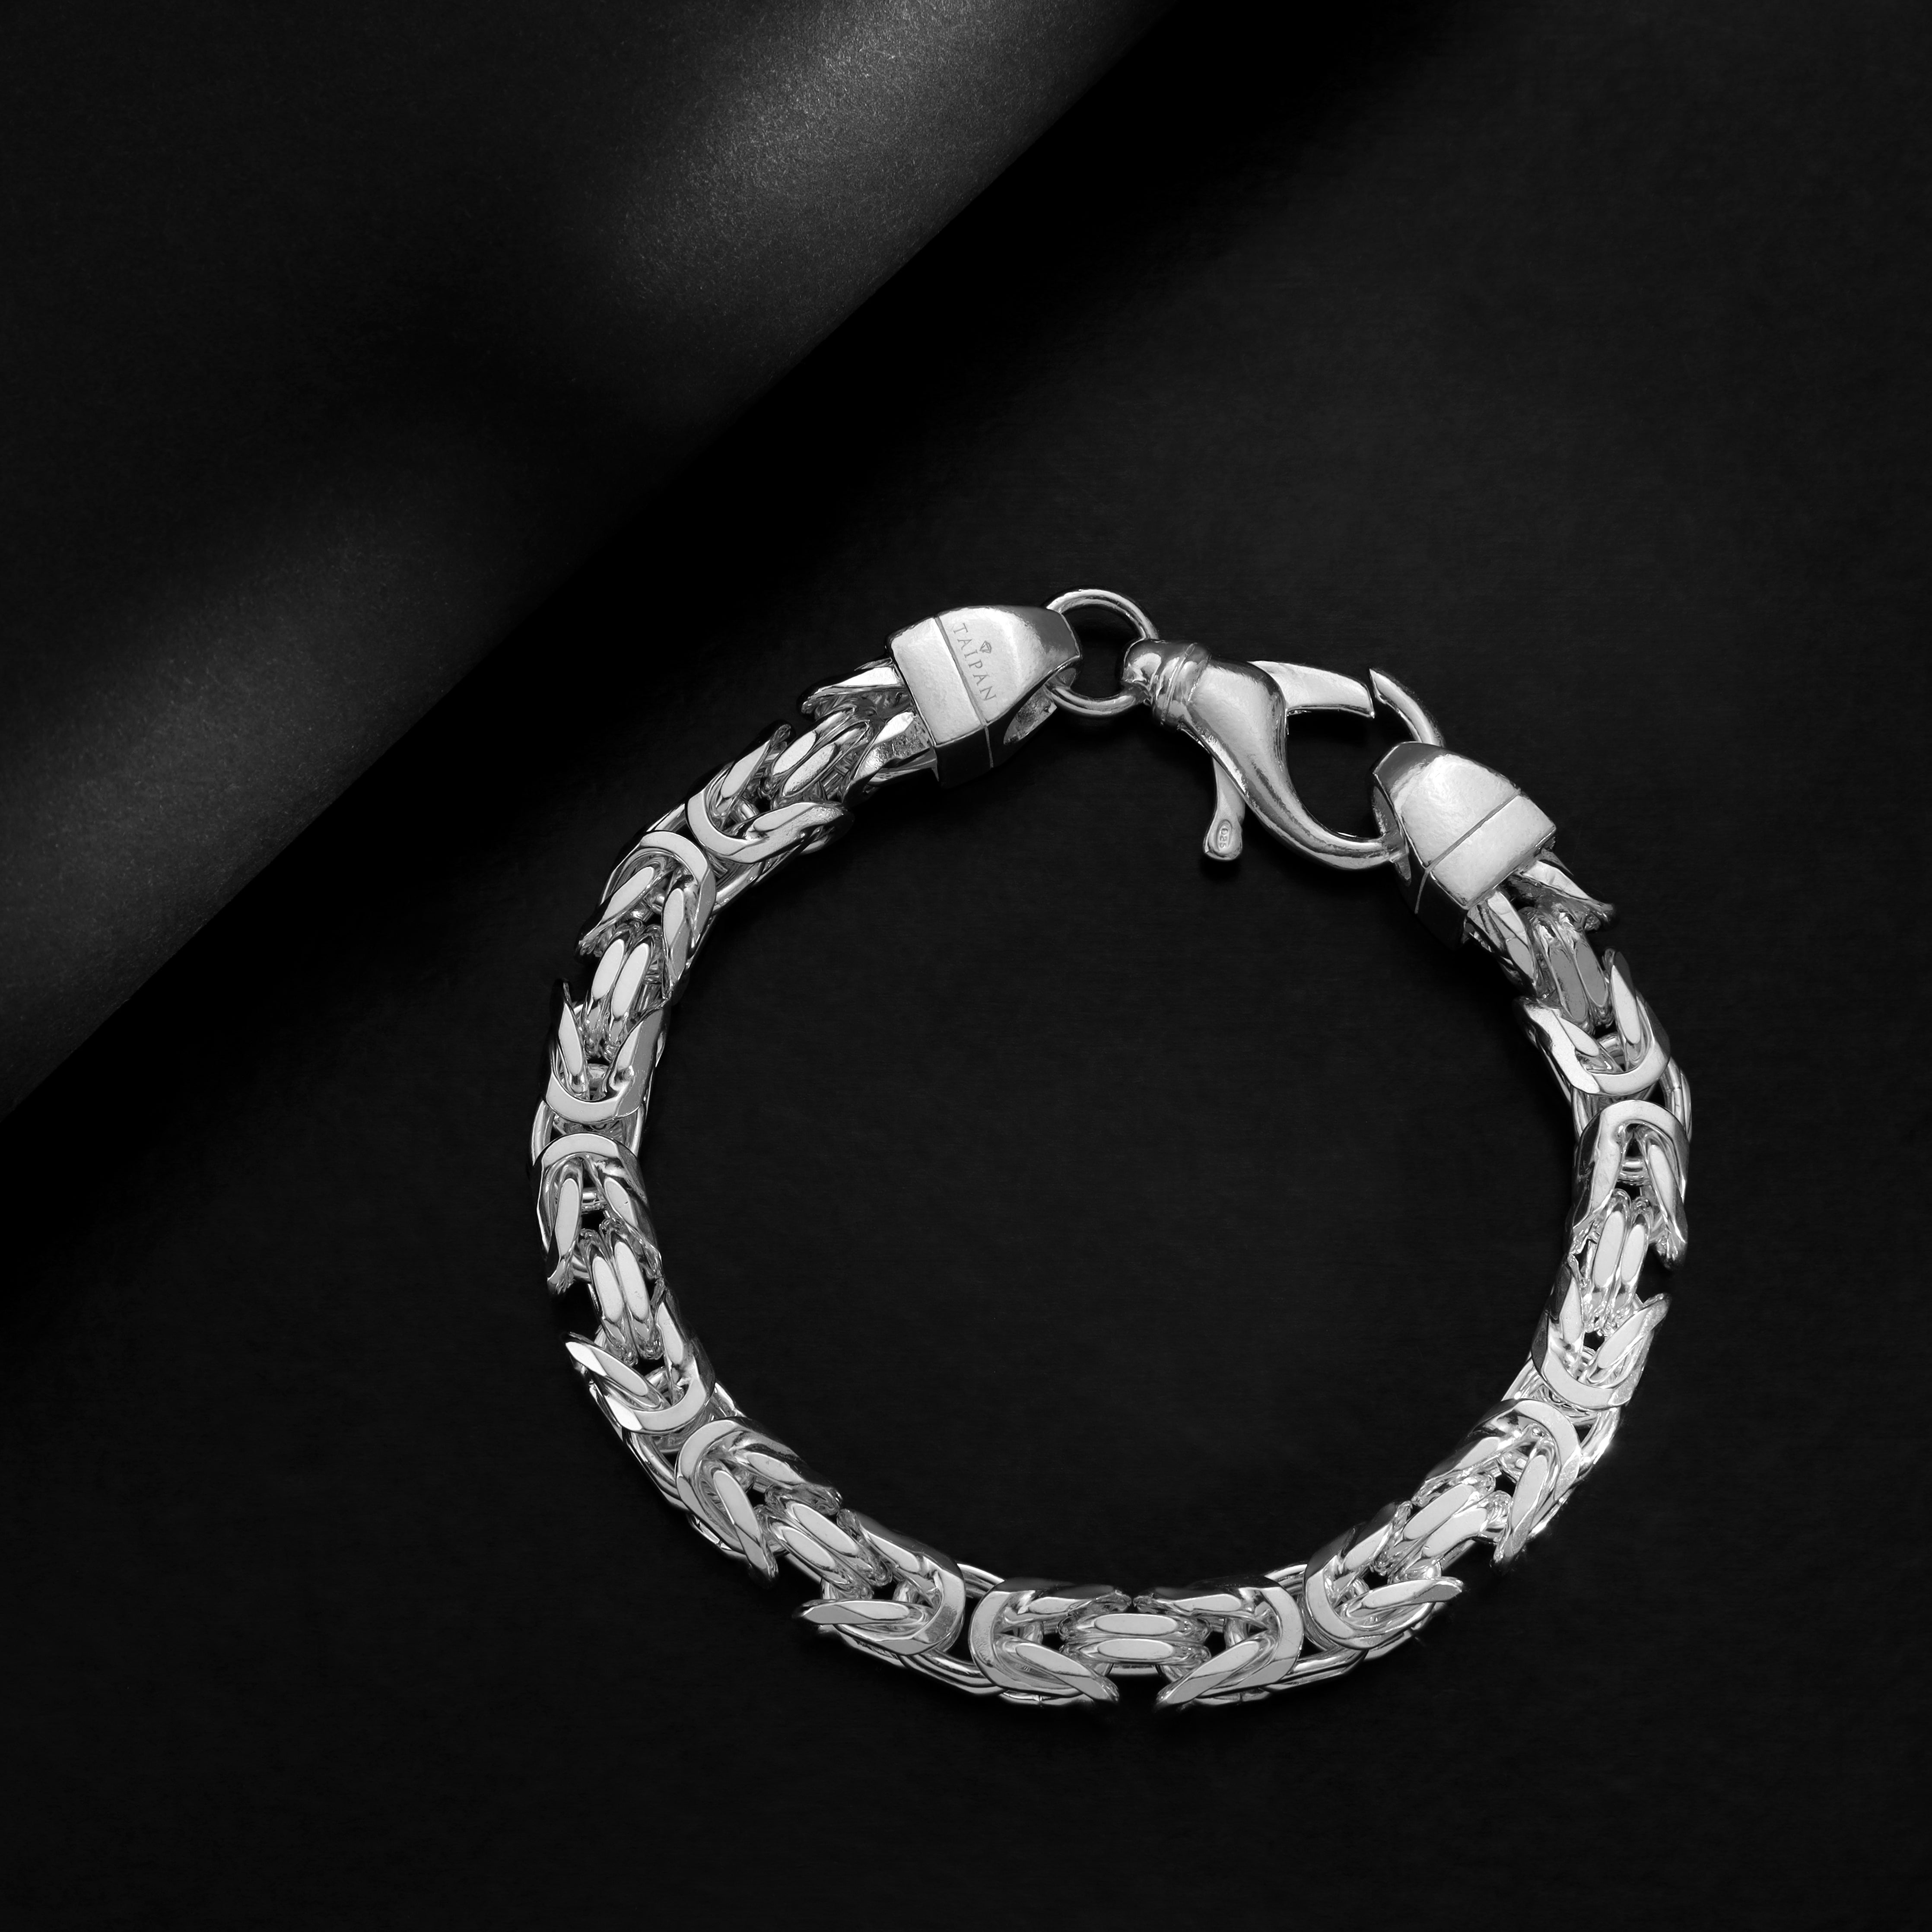 Königskette achtkant Armband Königsarmband 7,5mm breit 22cm lang aus 925 Sterling Silber (B522) - Taipan Schmuck